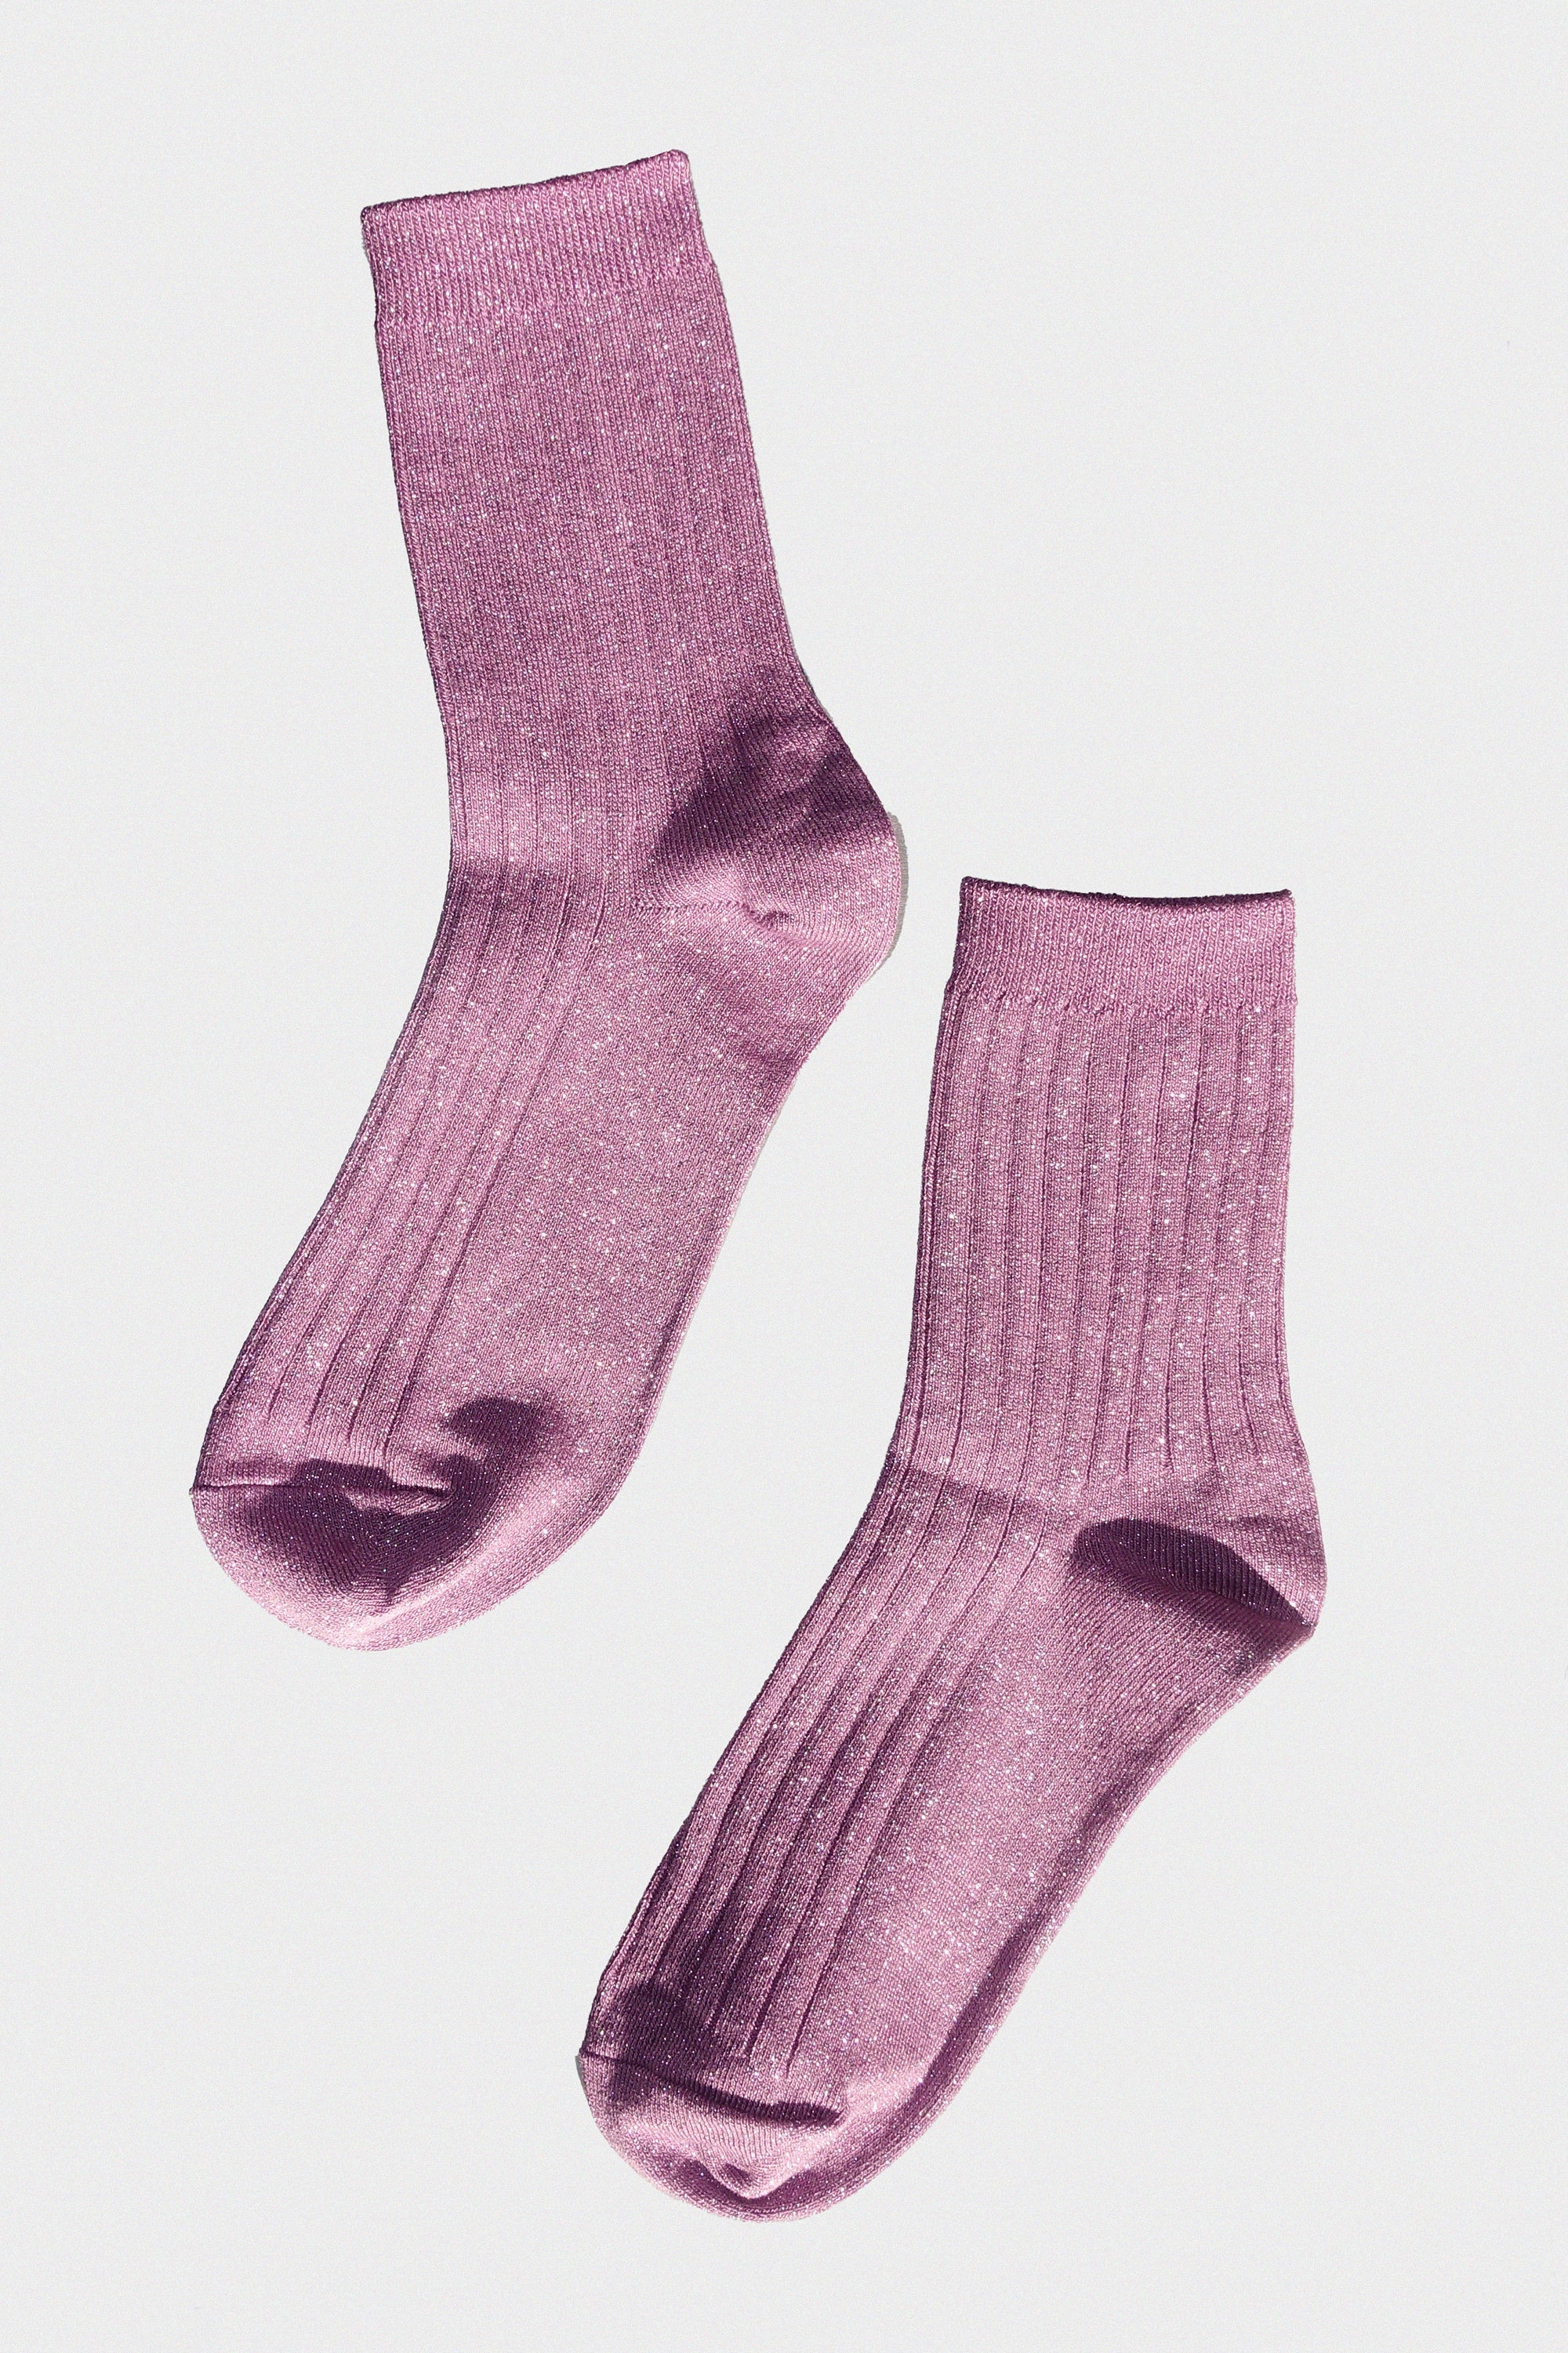 Her Socks in Lilac Glitter